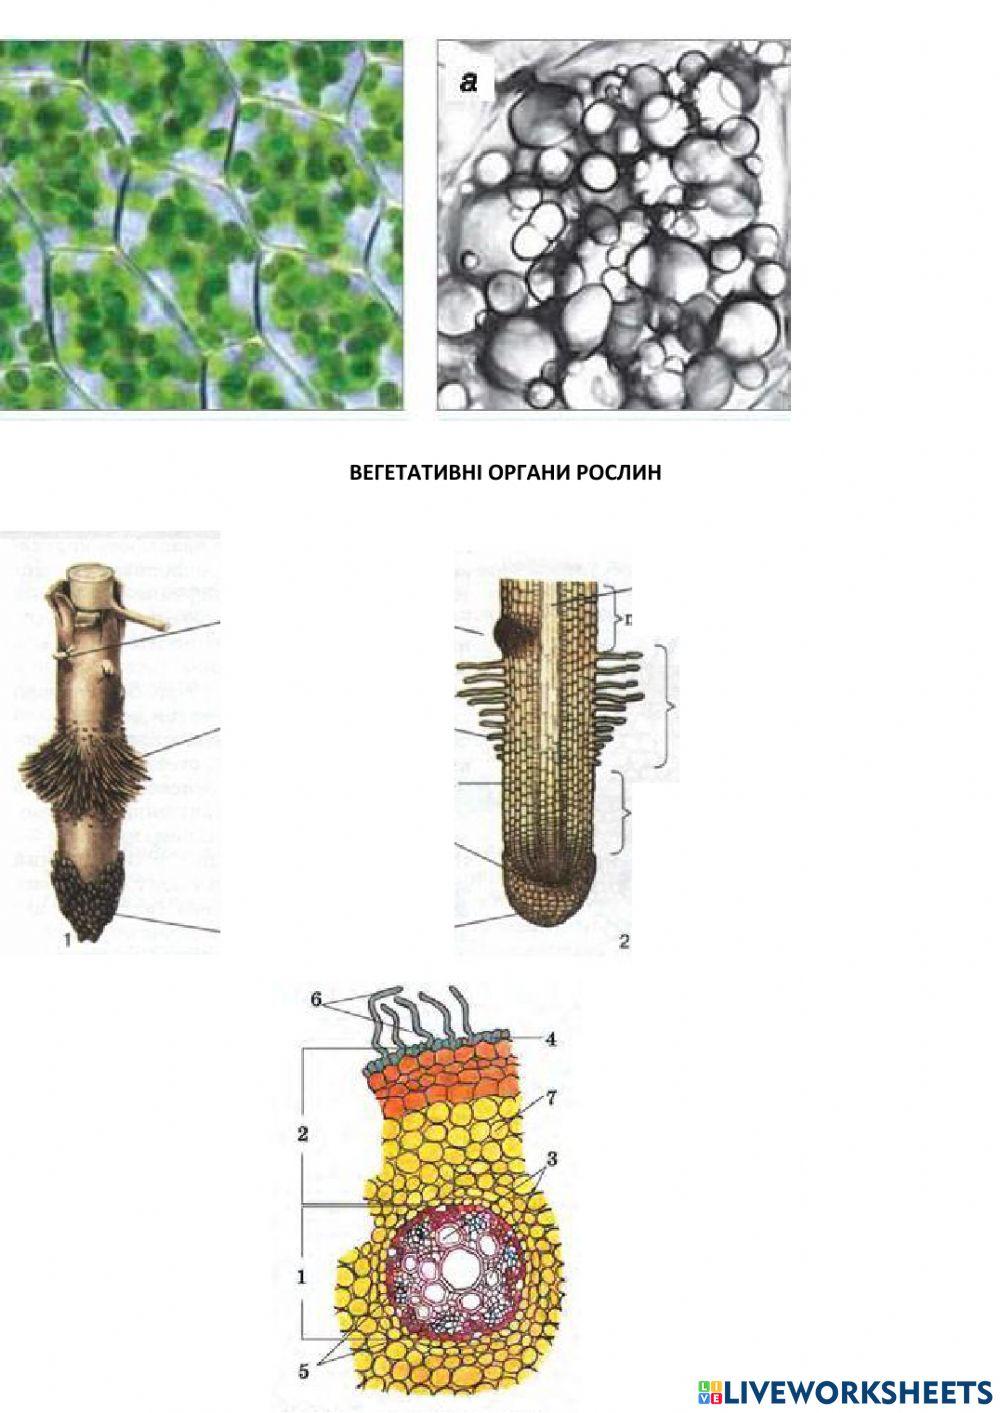 Клітина і тканини рослин. Вегетативні органи